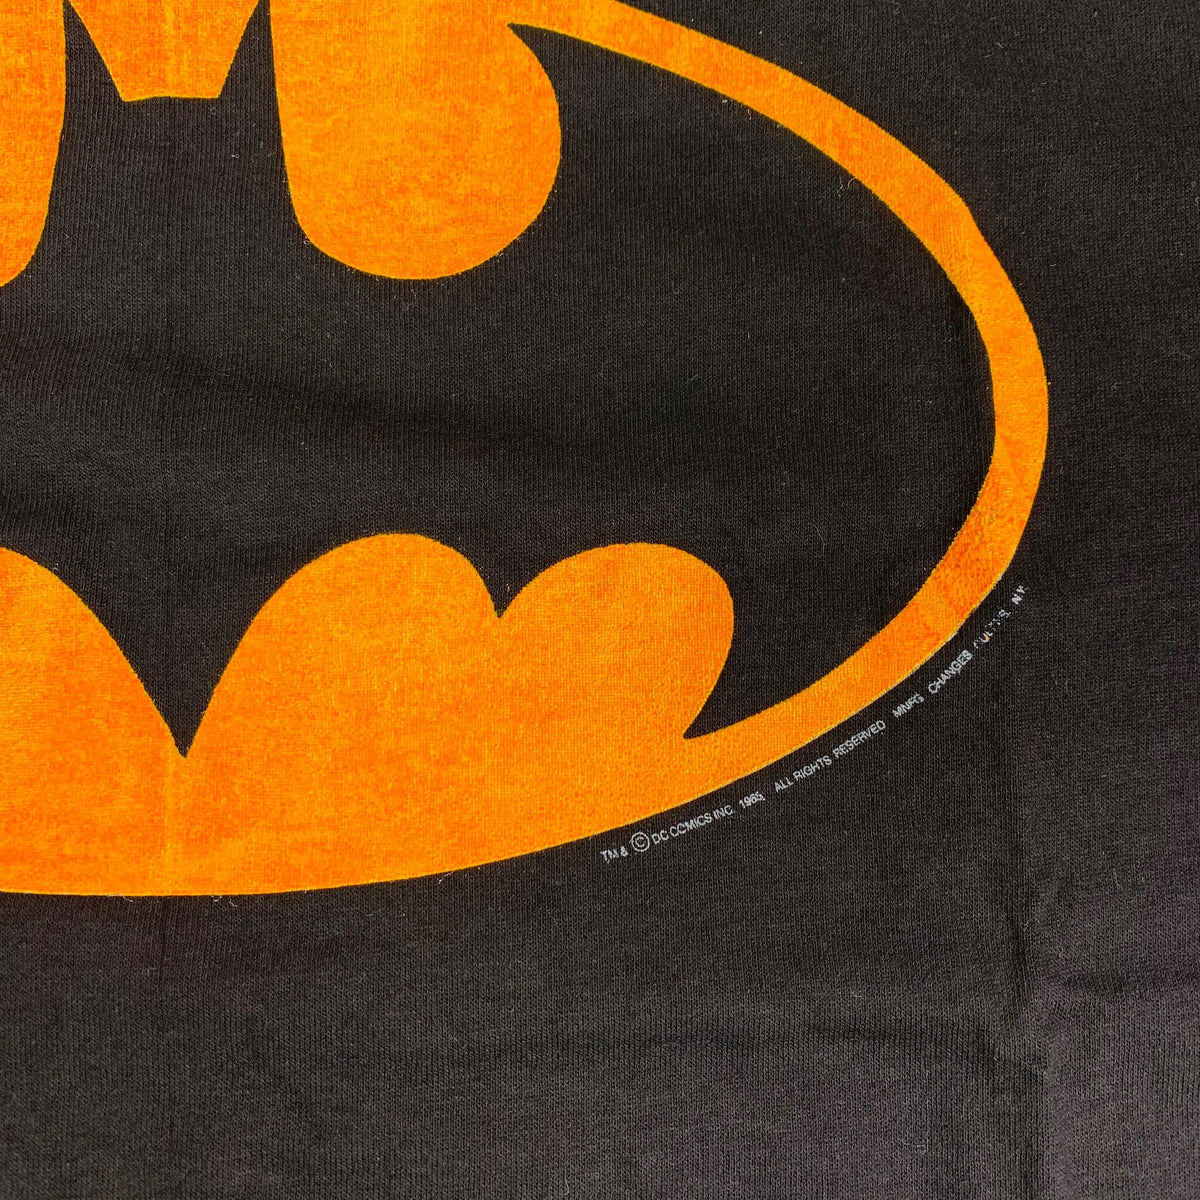 Vintage Batman &quot;1985&quot; T-Shirt - jointcustodydc